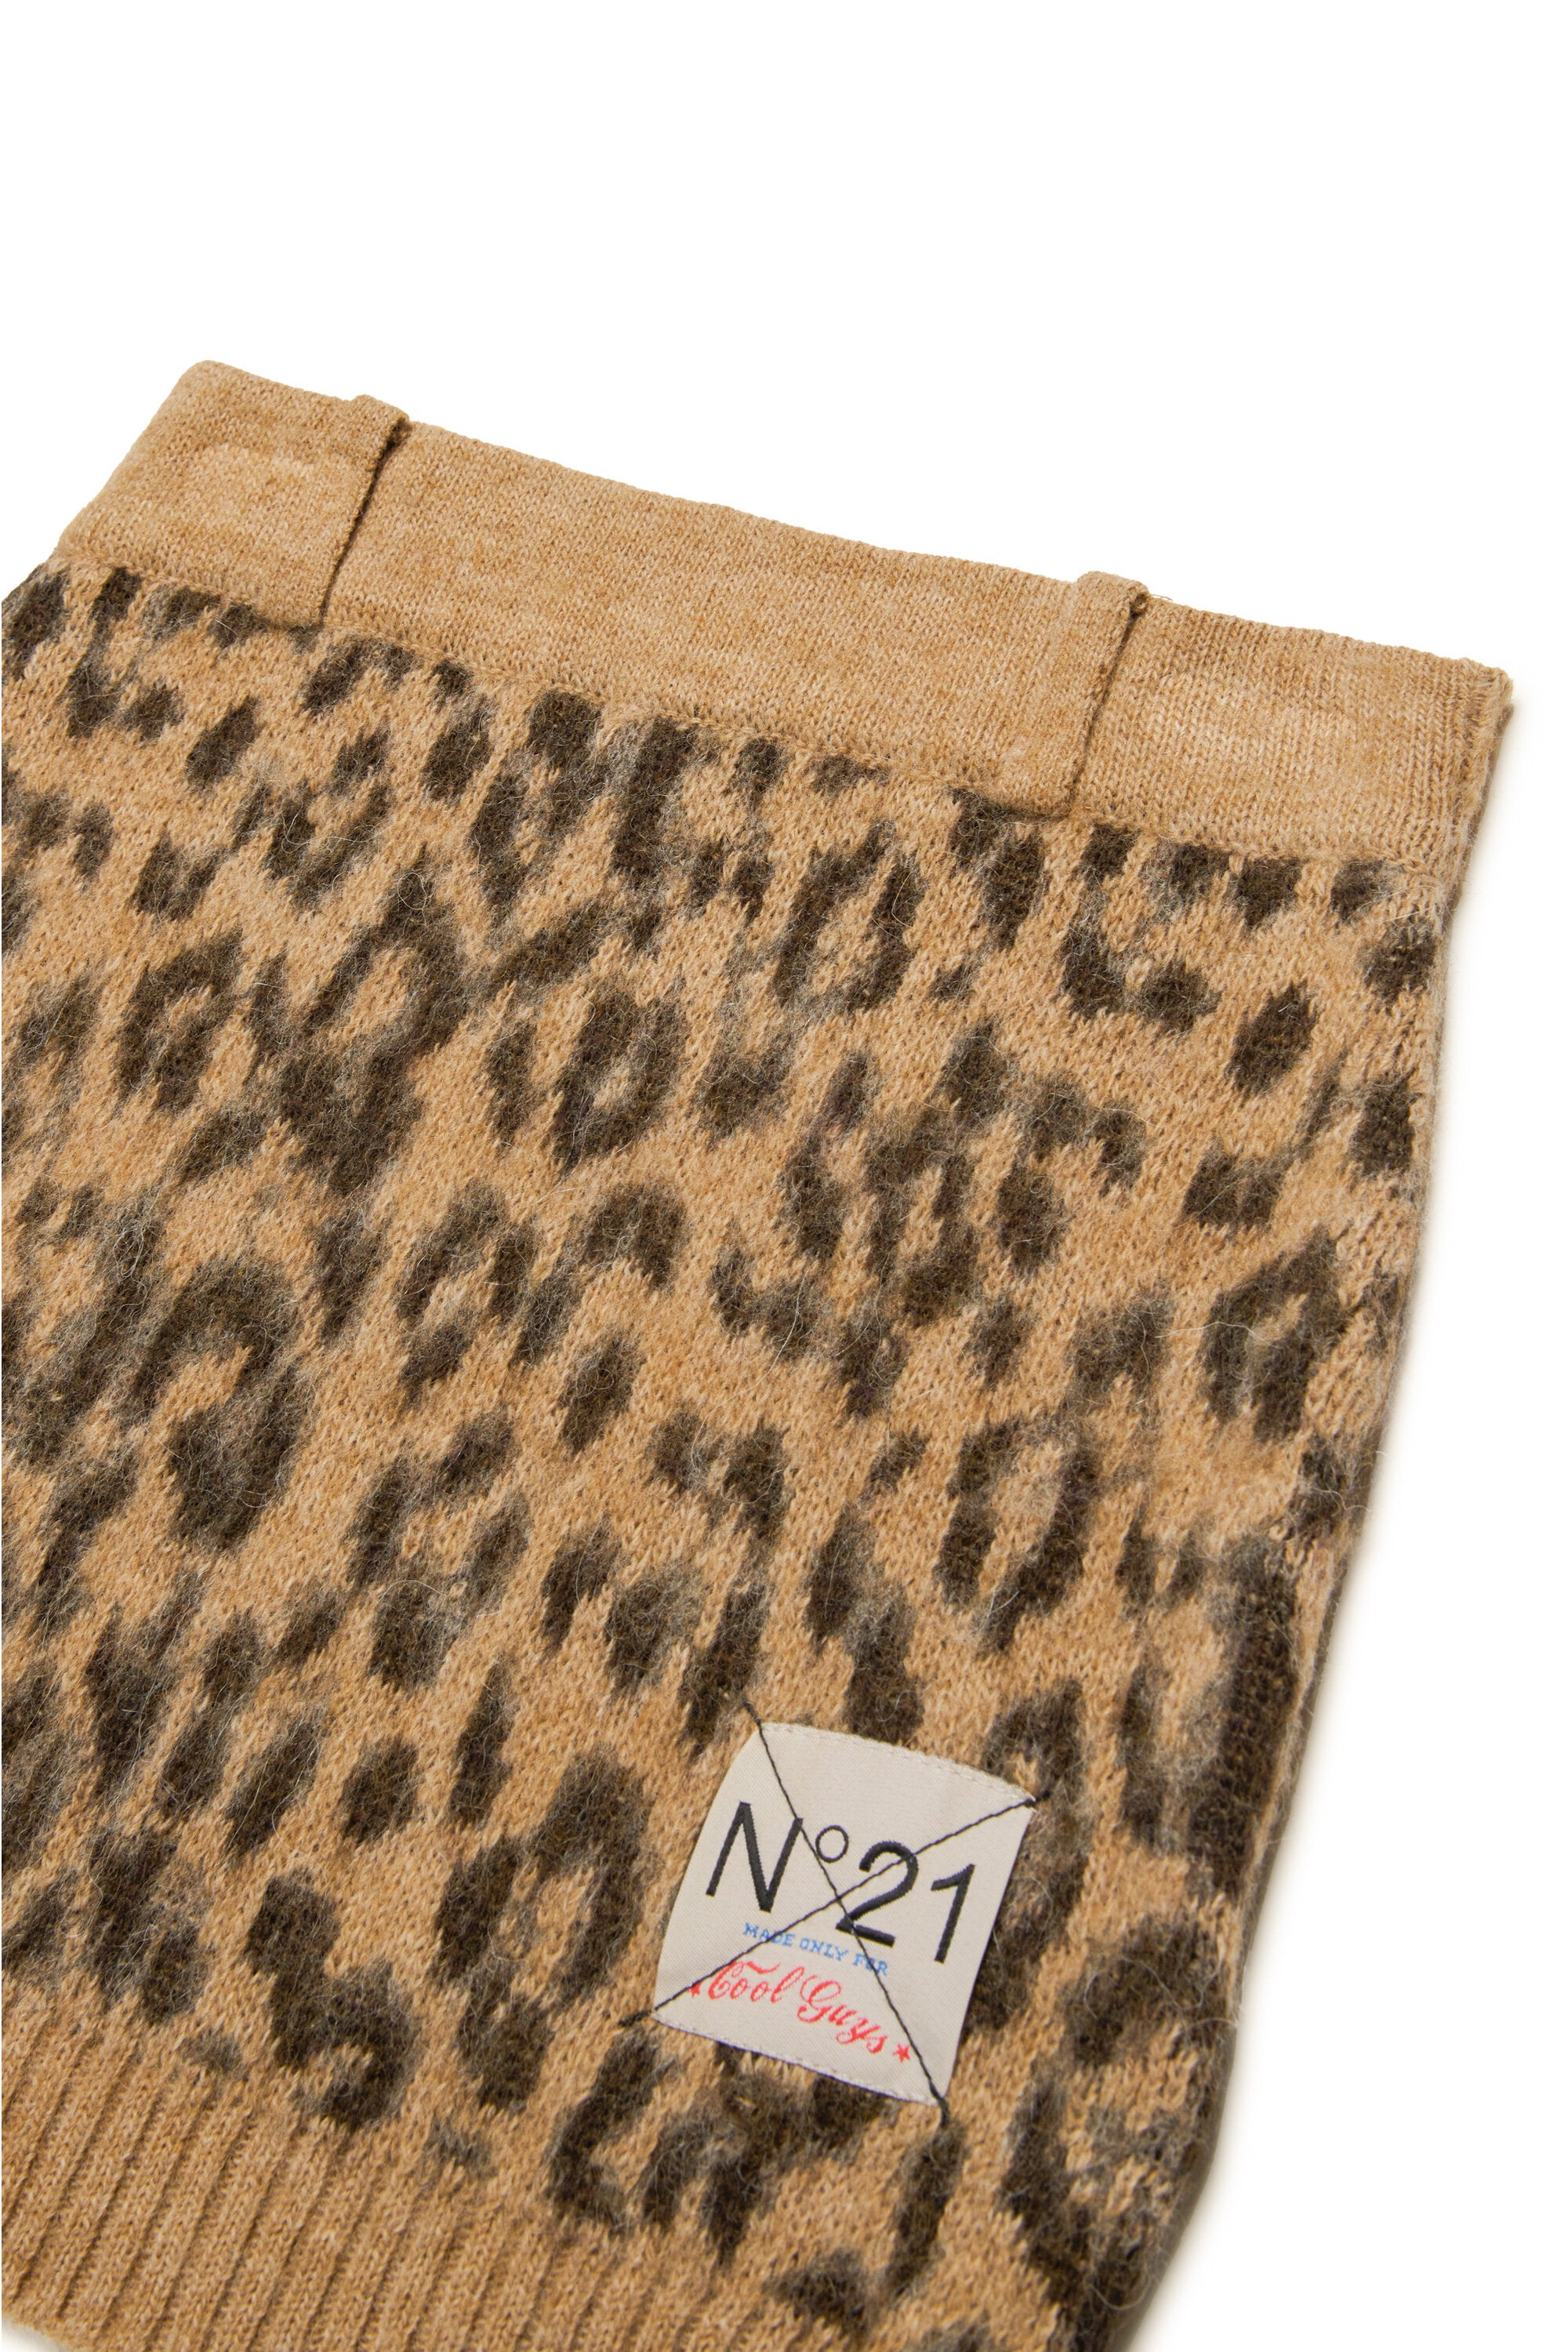 Minifalda en mezcla de lana con estampado de leopardo